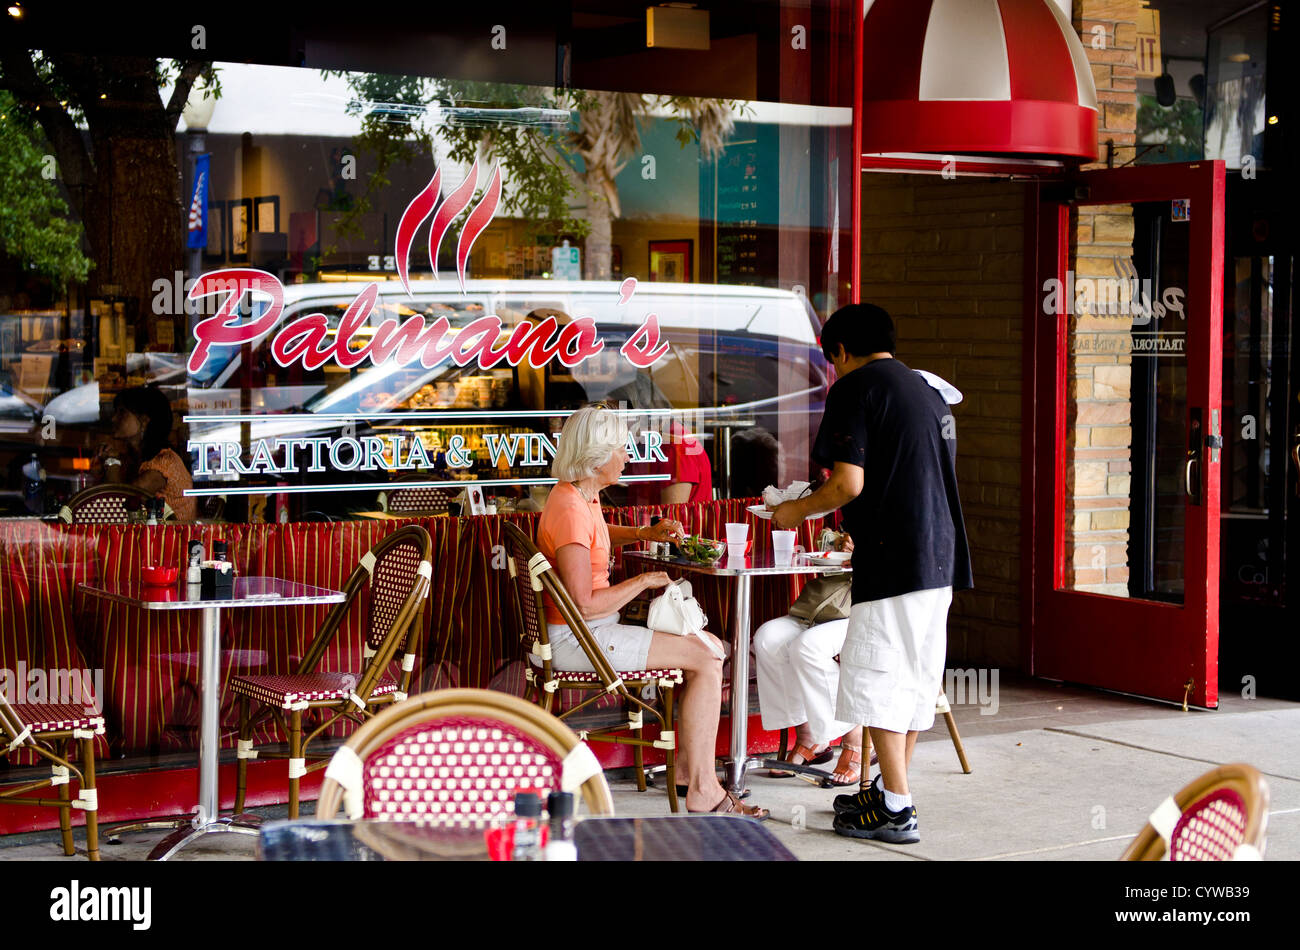 USA, Floride. Palmano's sidewalk cafe trattoria restaurant centre-ville de Winter Park, Floride. Banque D'Images